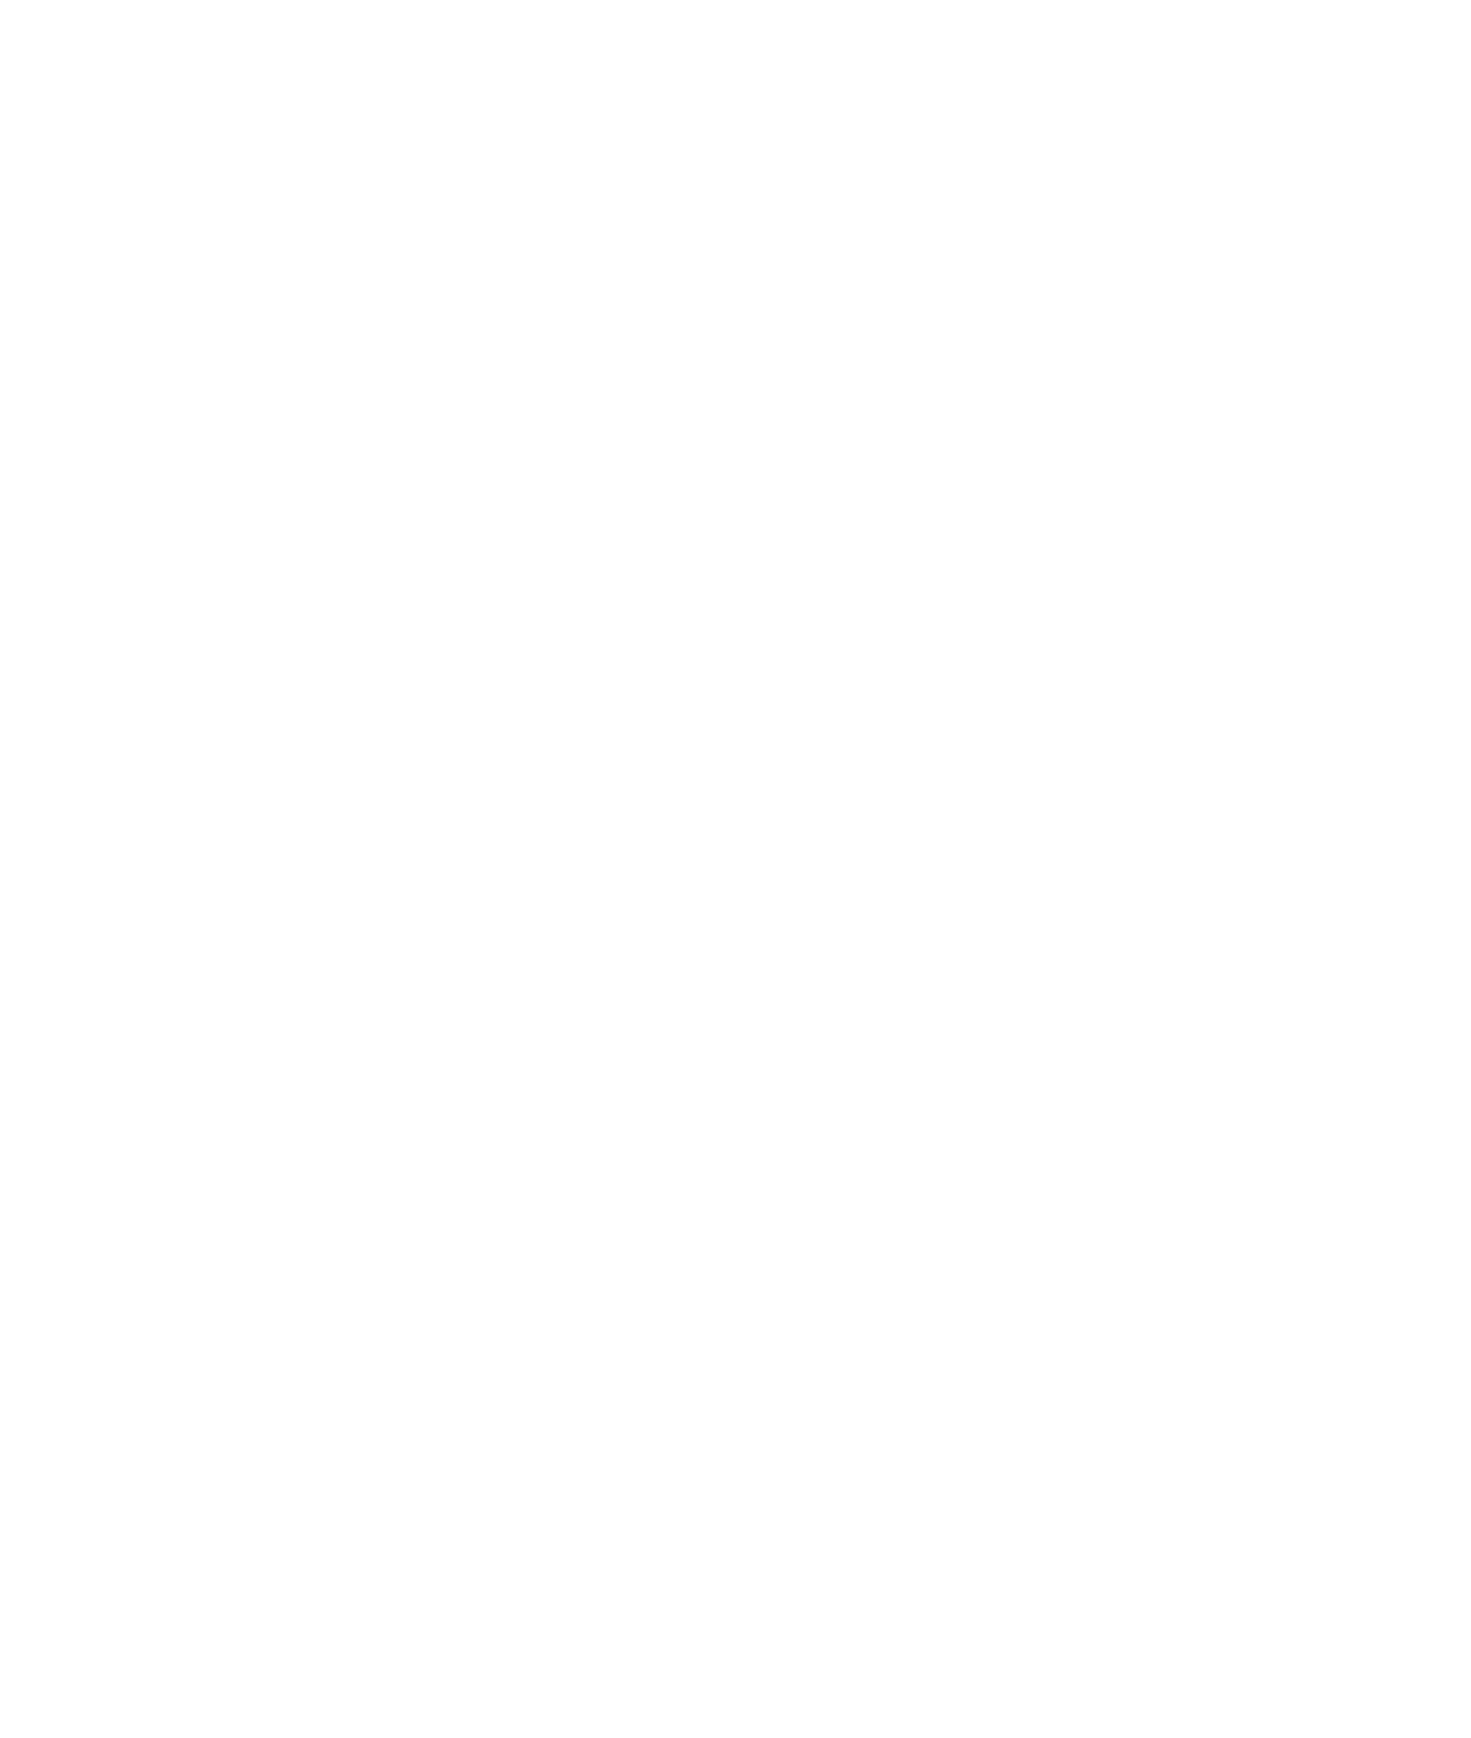 Romgaz logo large for dark backgrounds (transparent PNG)